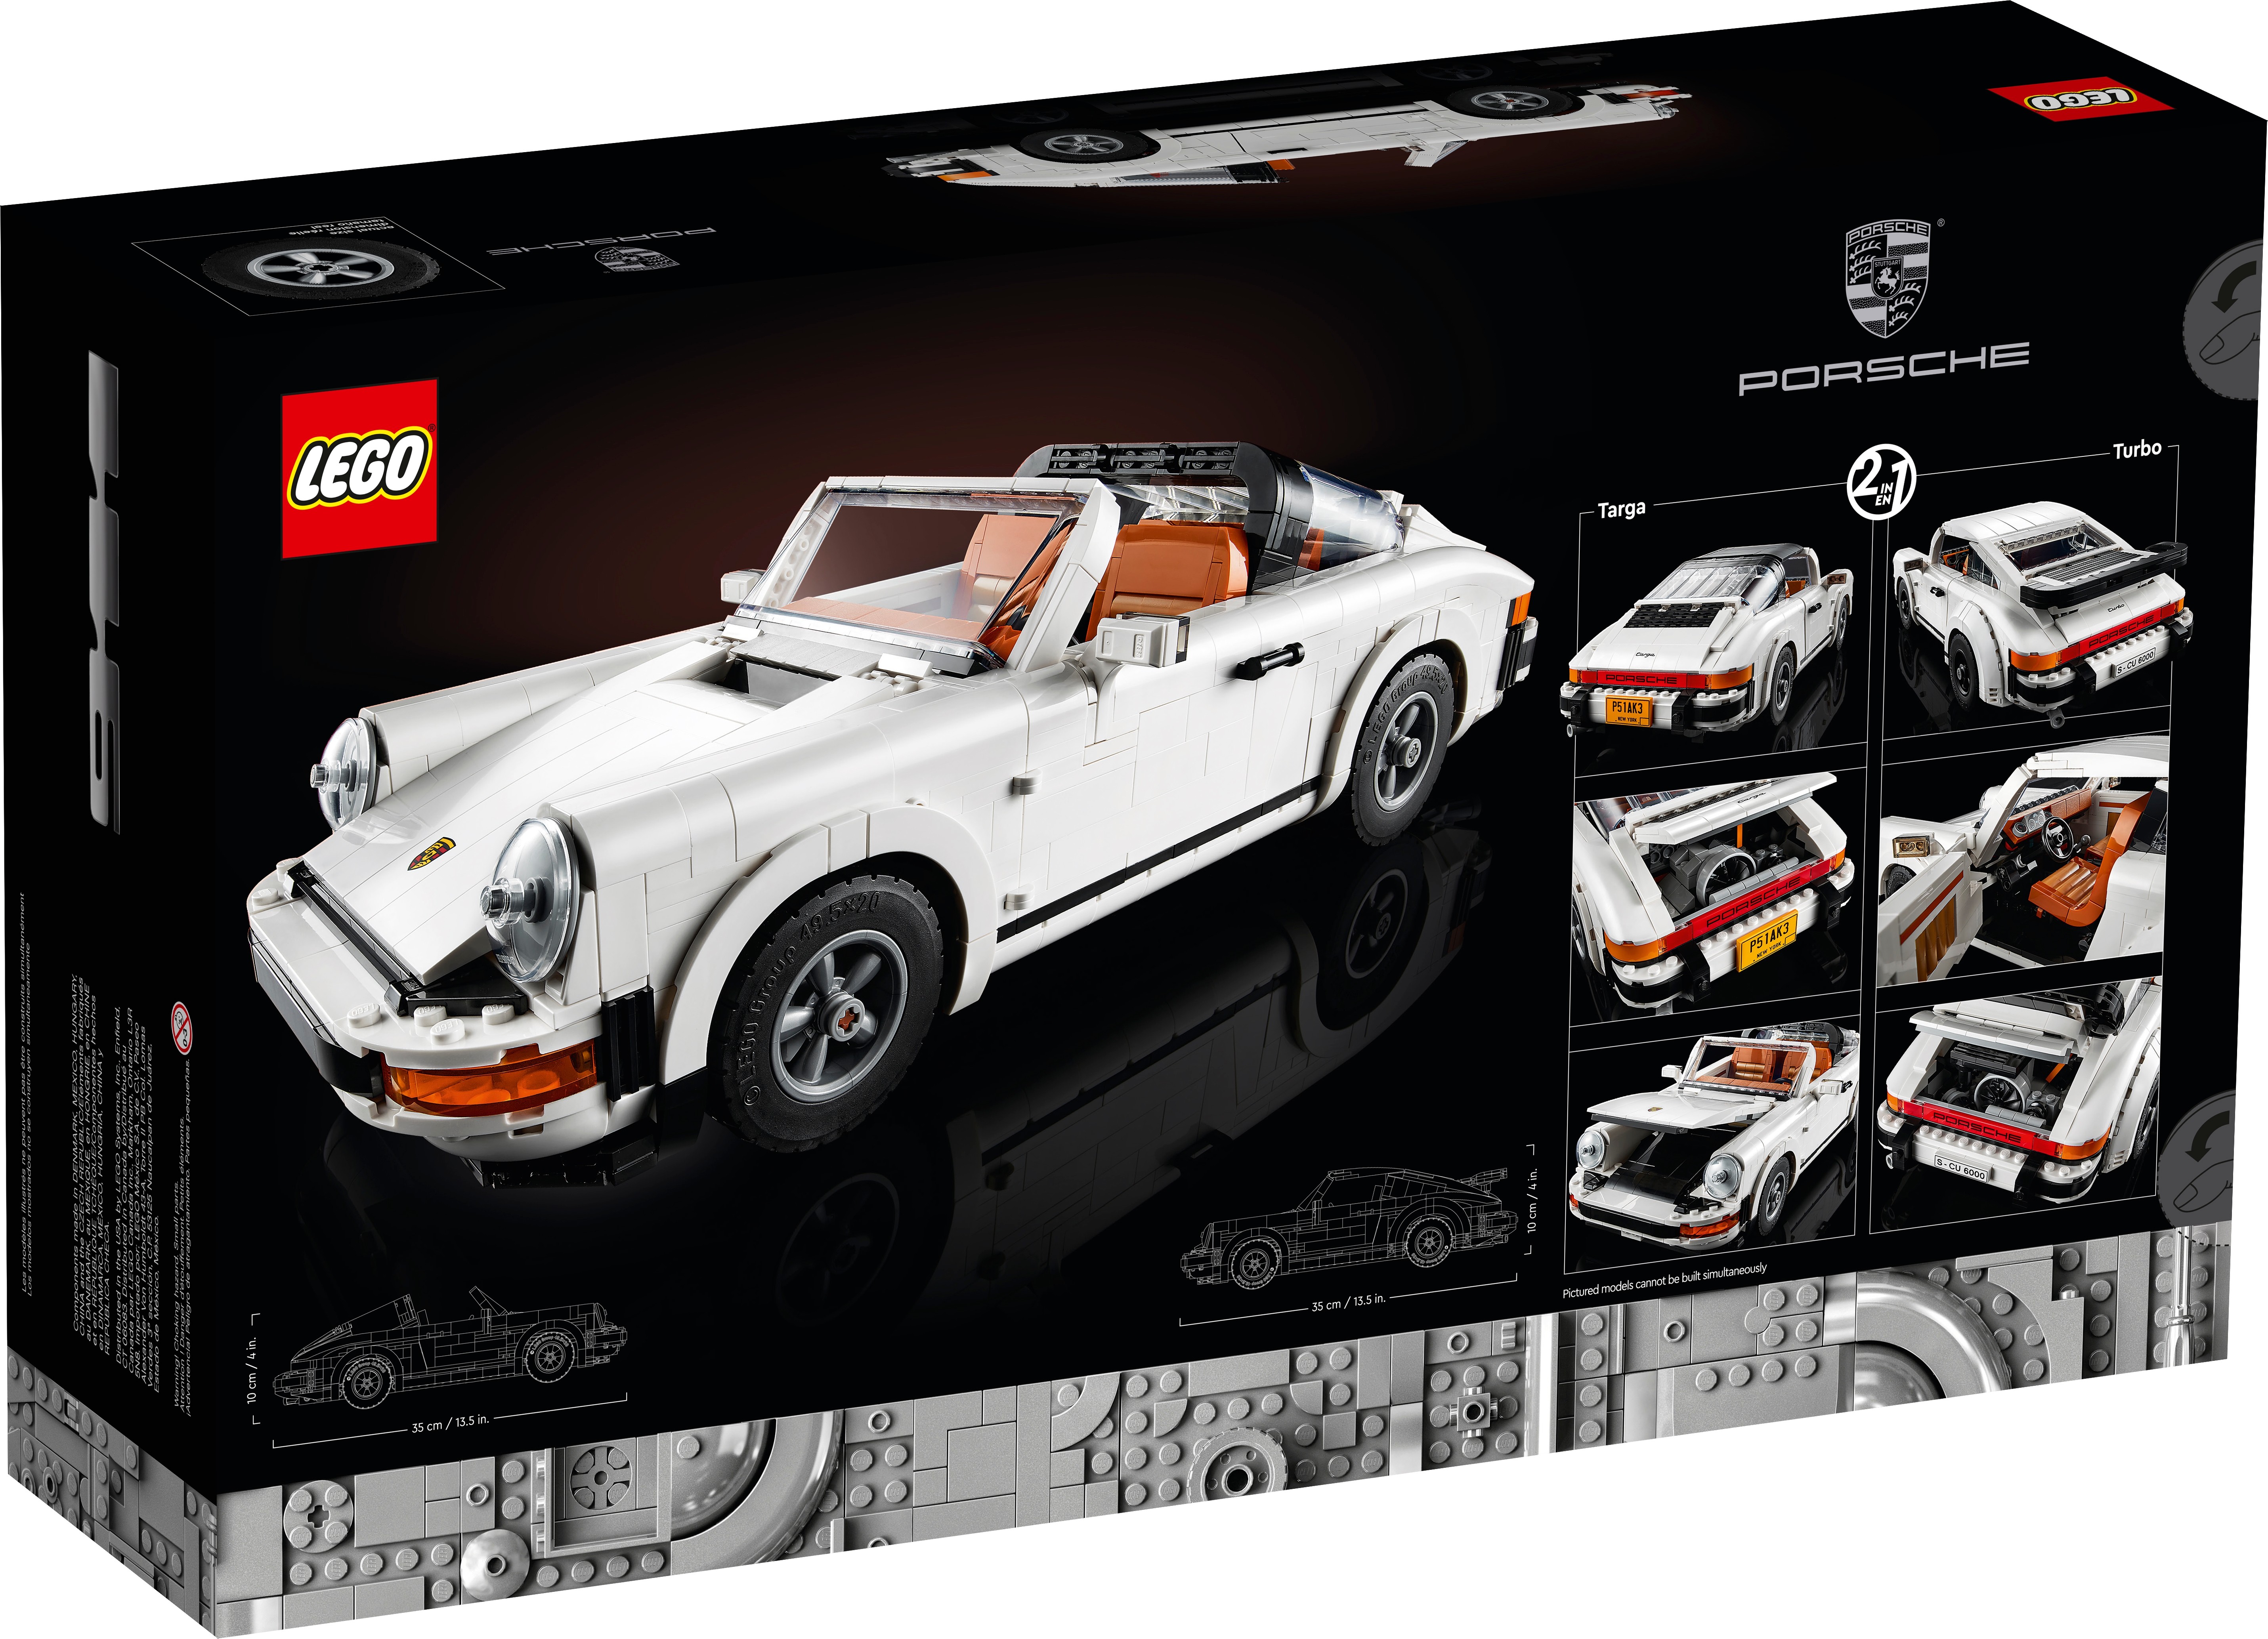 LEGO MOC Mini Porsche 911 by Rauy